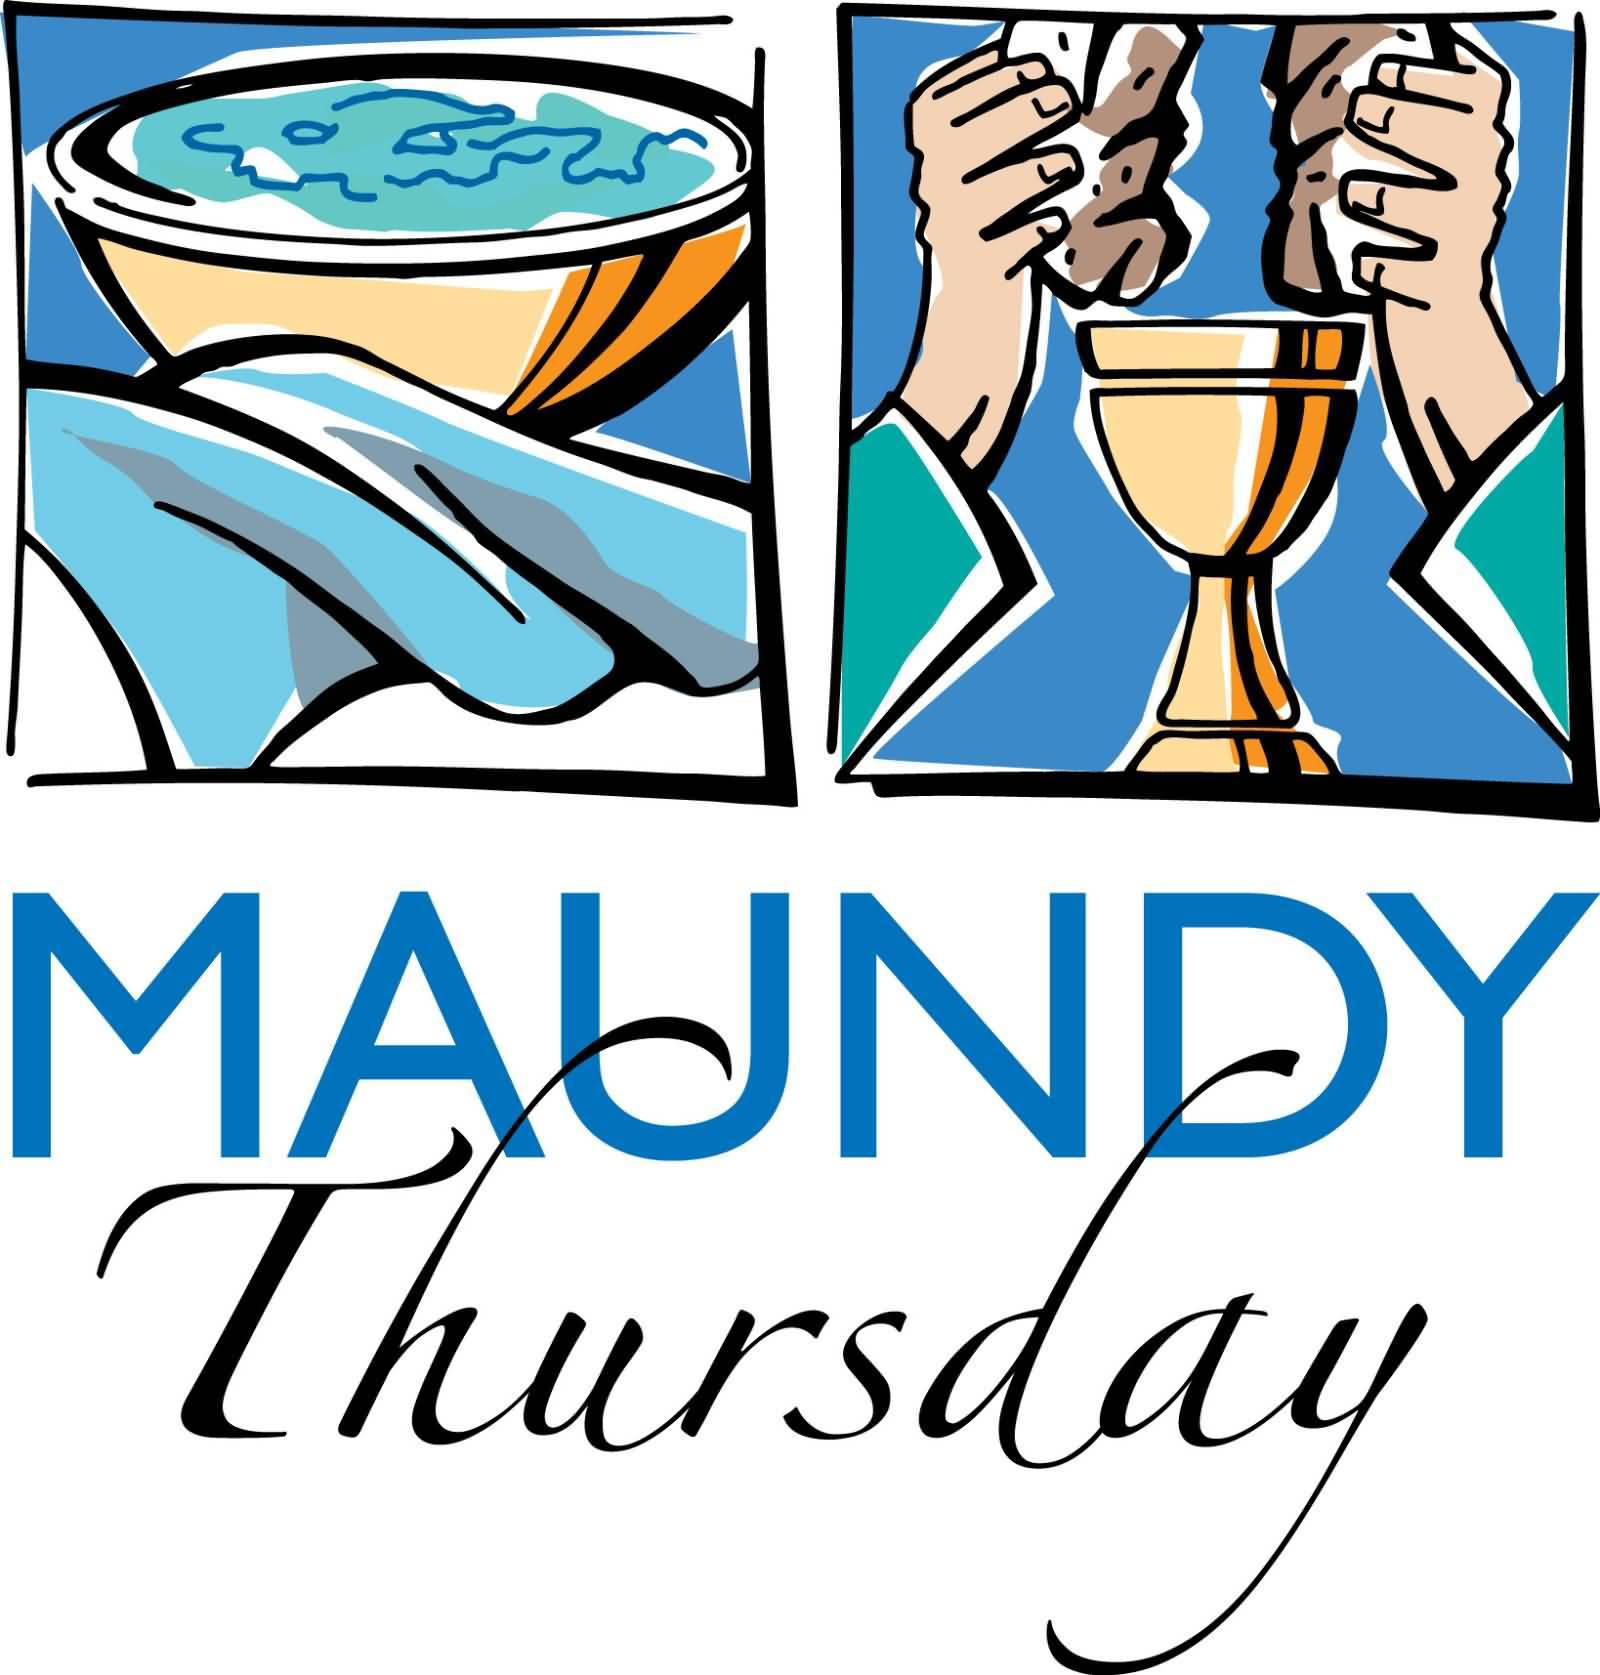 Maundy Thursday Wishes